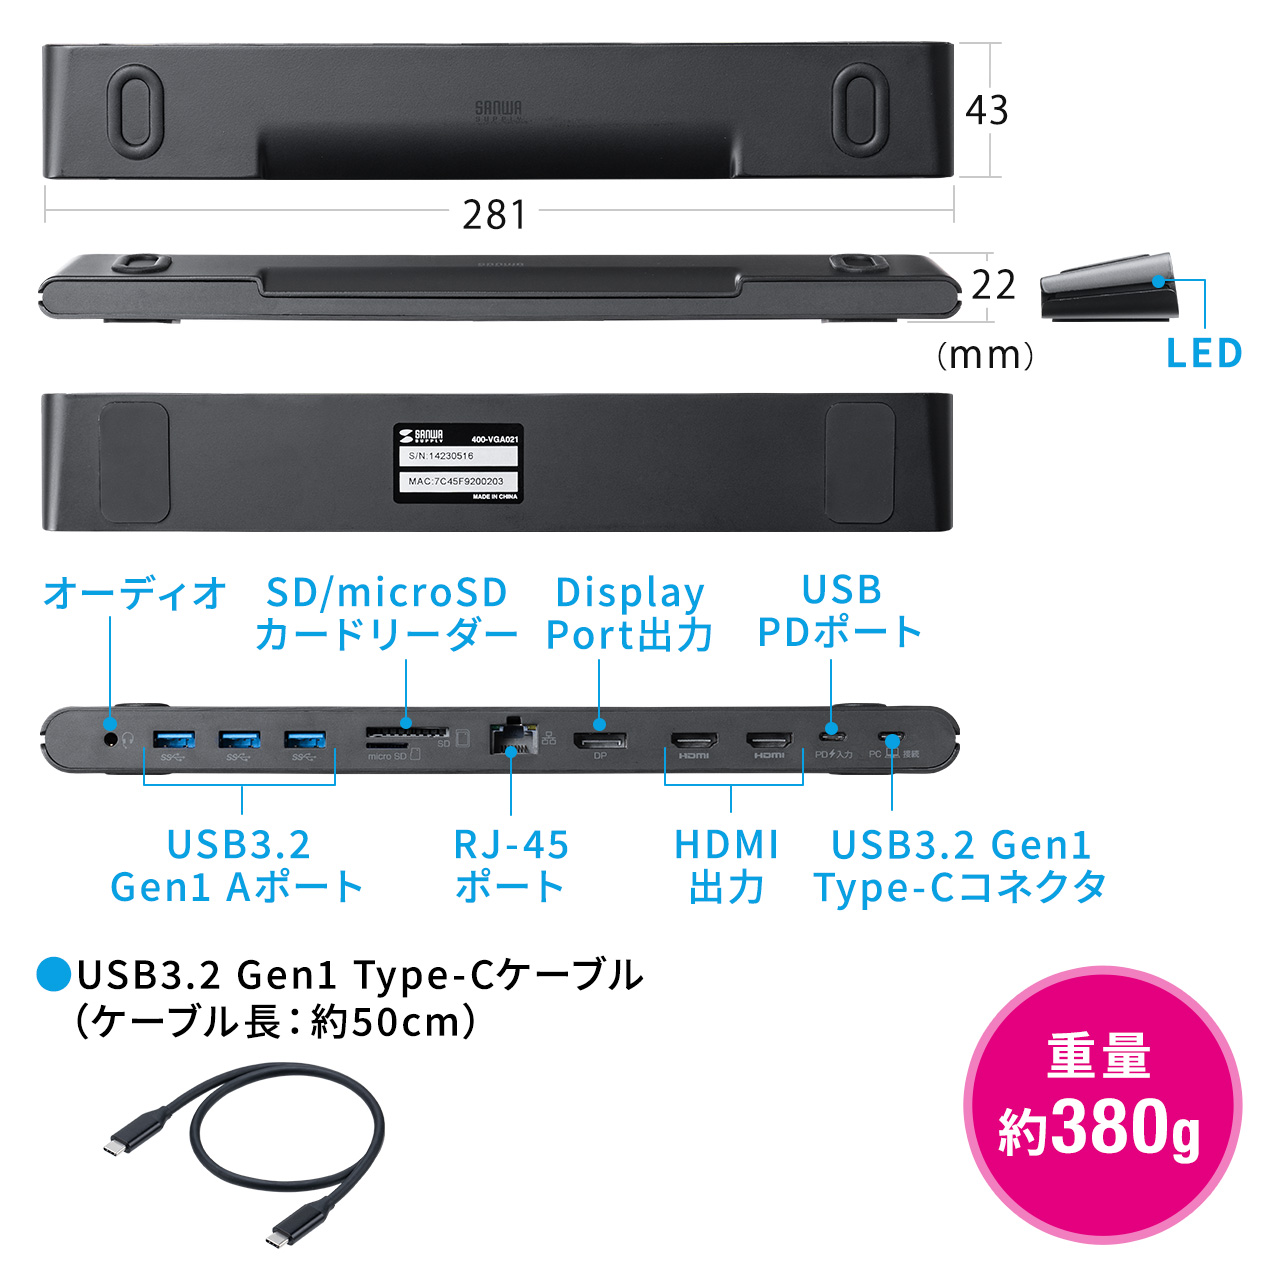 yrWlXZ[zhbLOXe[V HDMI2 3ʏo͑Ή USB-Cڑ X^h@\ RpNgTCY 4K/60HzΉ 400-VGA021